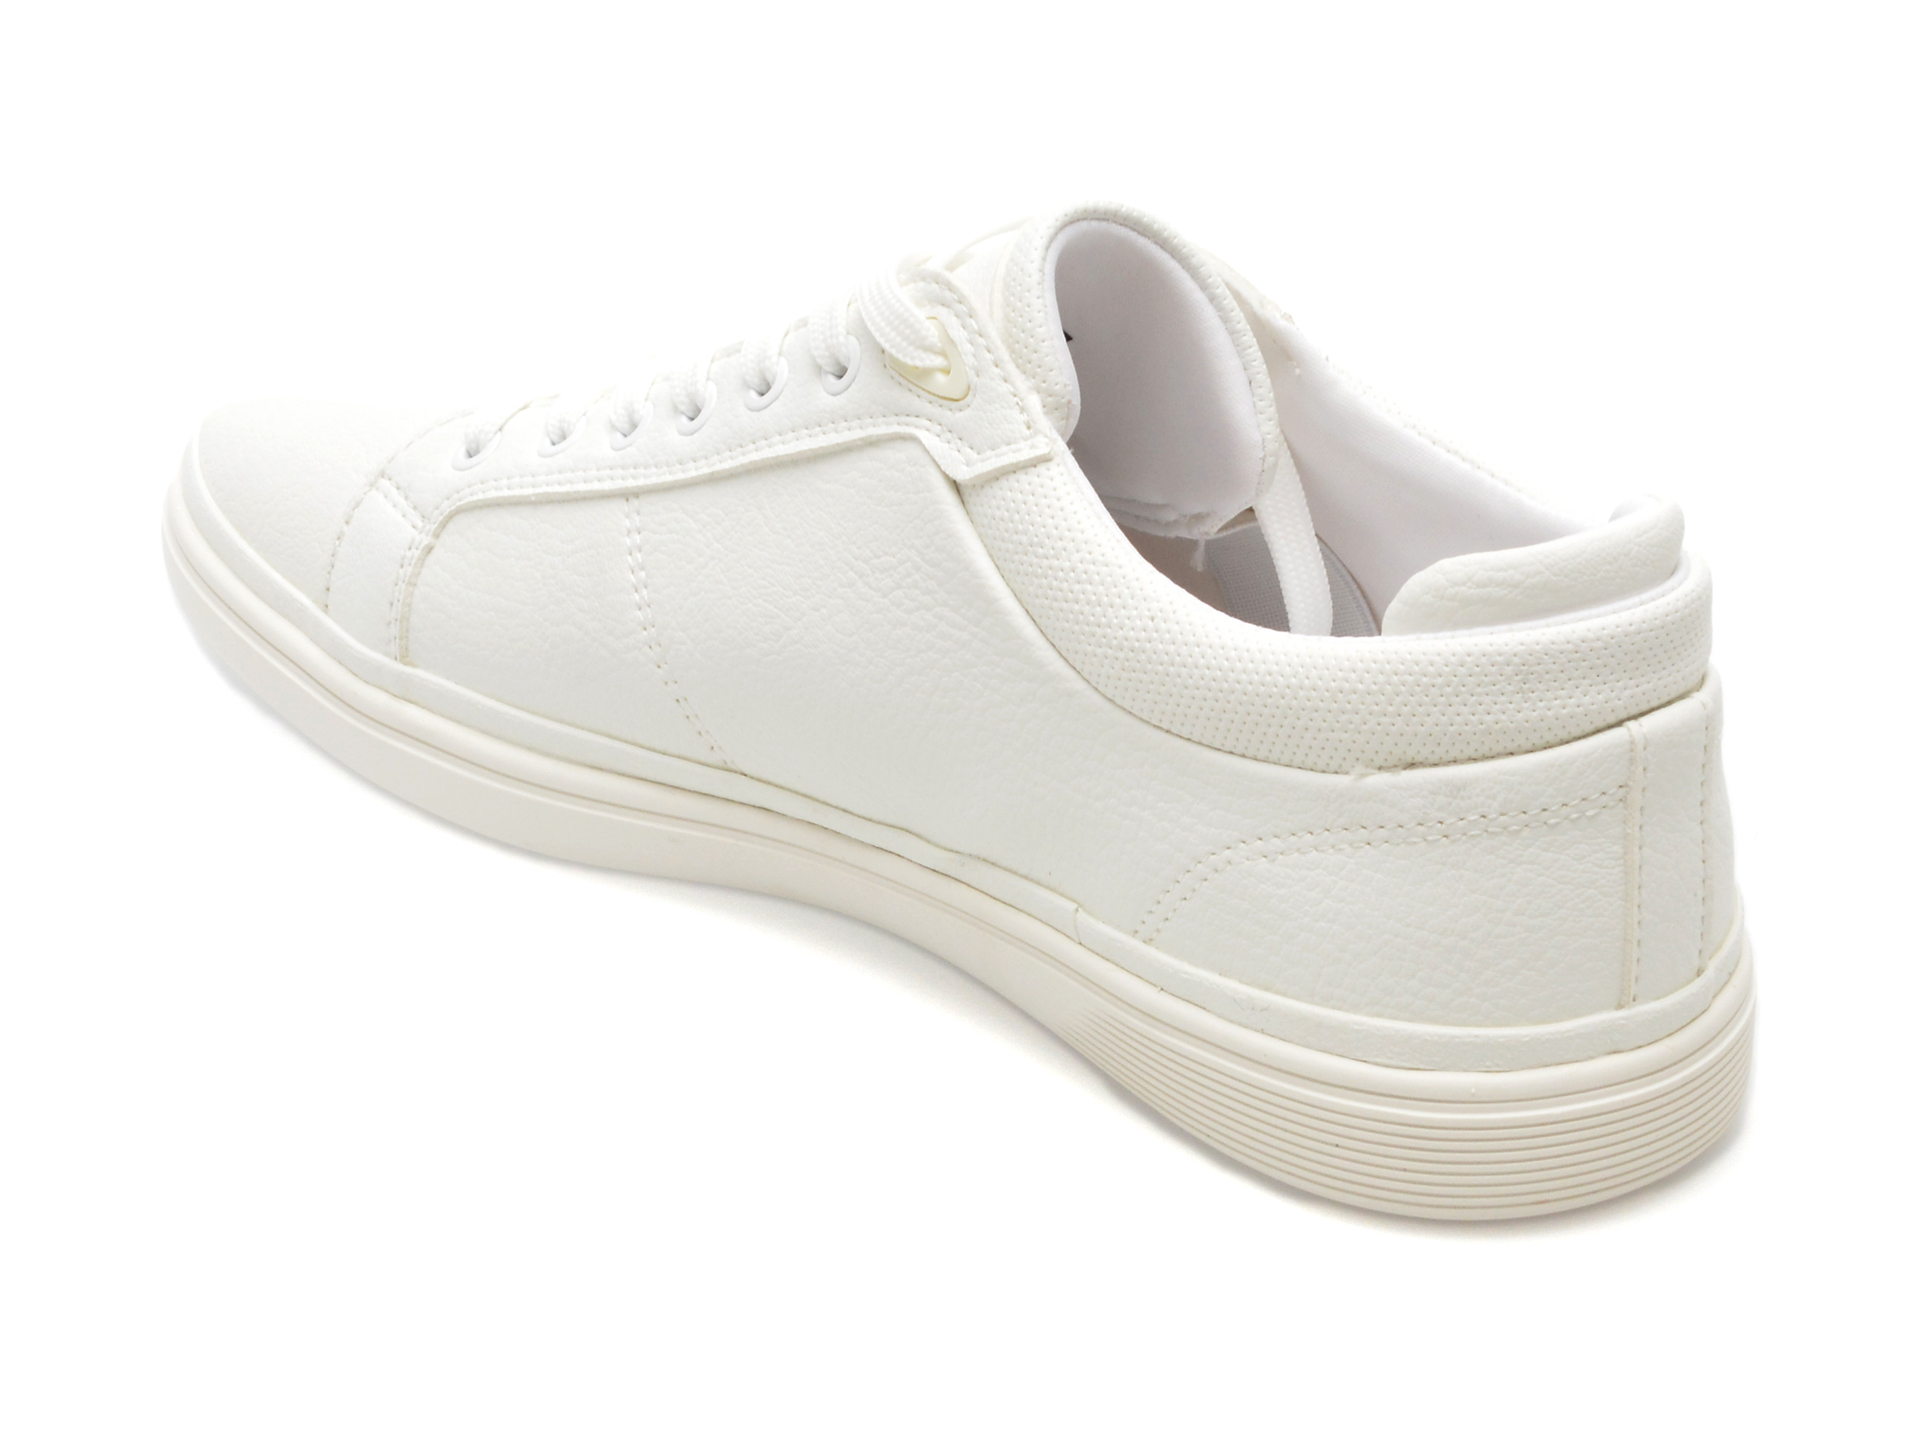 Pantofi casual ALDO albi, FINESPEC110, din piele ecologica